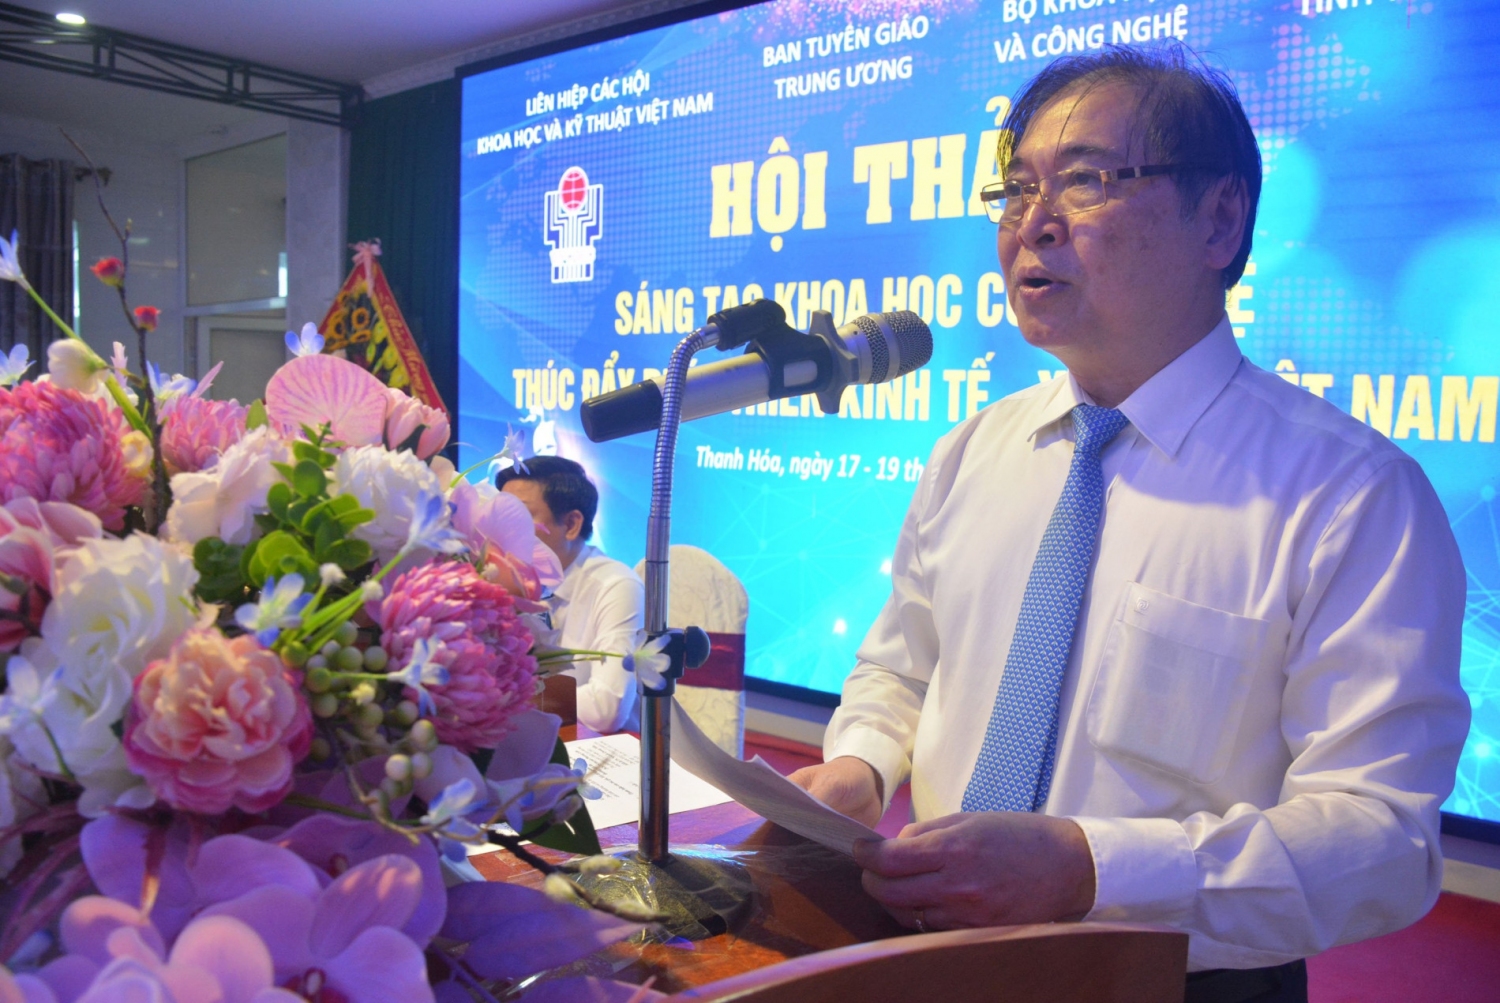 Chủ tịch Liên hiệp Hội Việt Nam, Chủ tịch Quỹ VIFOTEC Phan Xuân Dũng phát biểu tại hội thảo khoa học “Sáng tạo khoa học và công nghệ thúc đẩy phát triển kinh tế-xã hội Việt Nam” (8/2022)